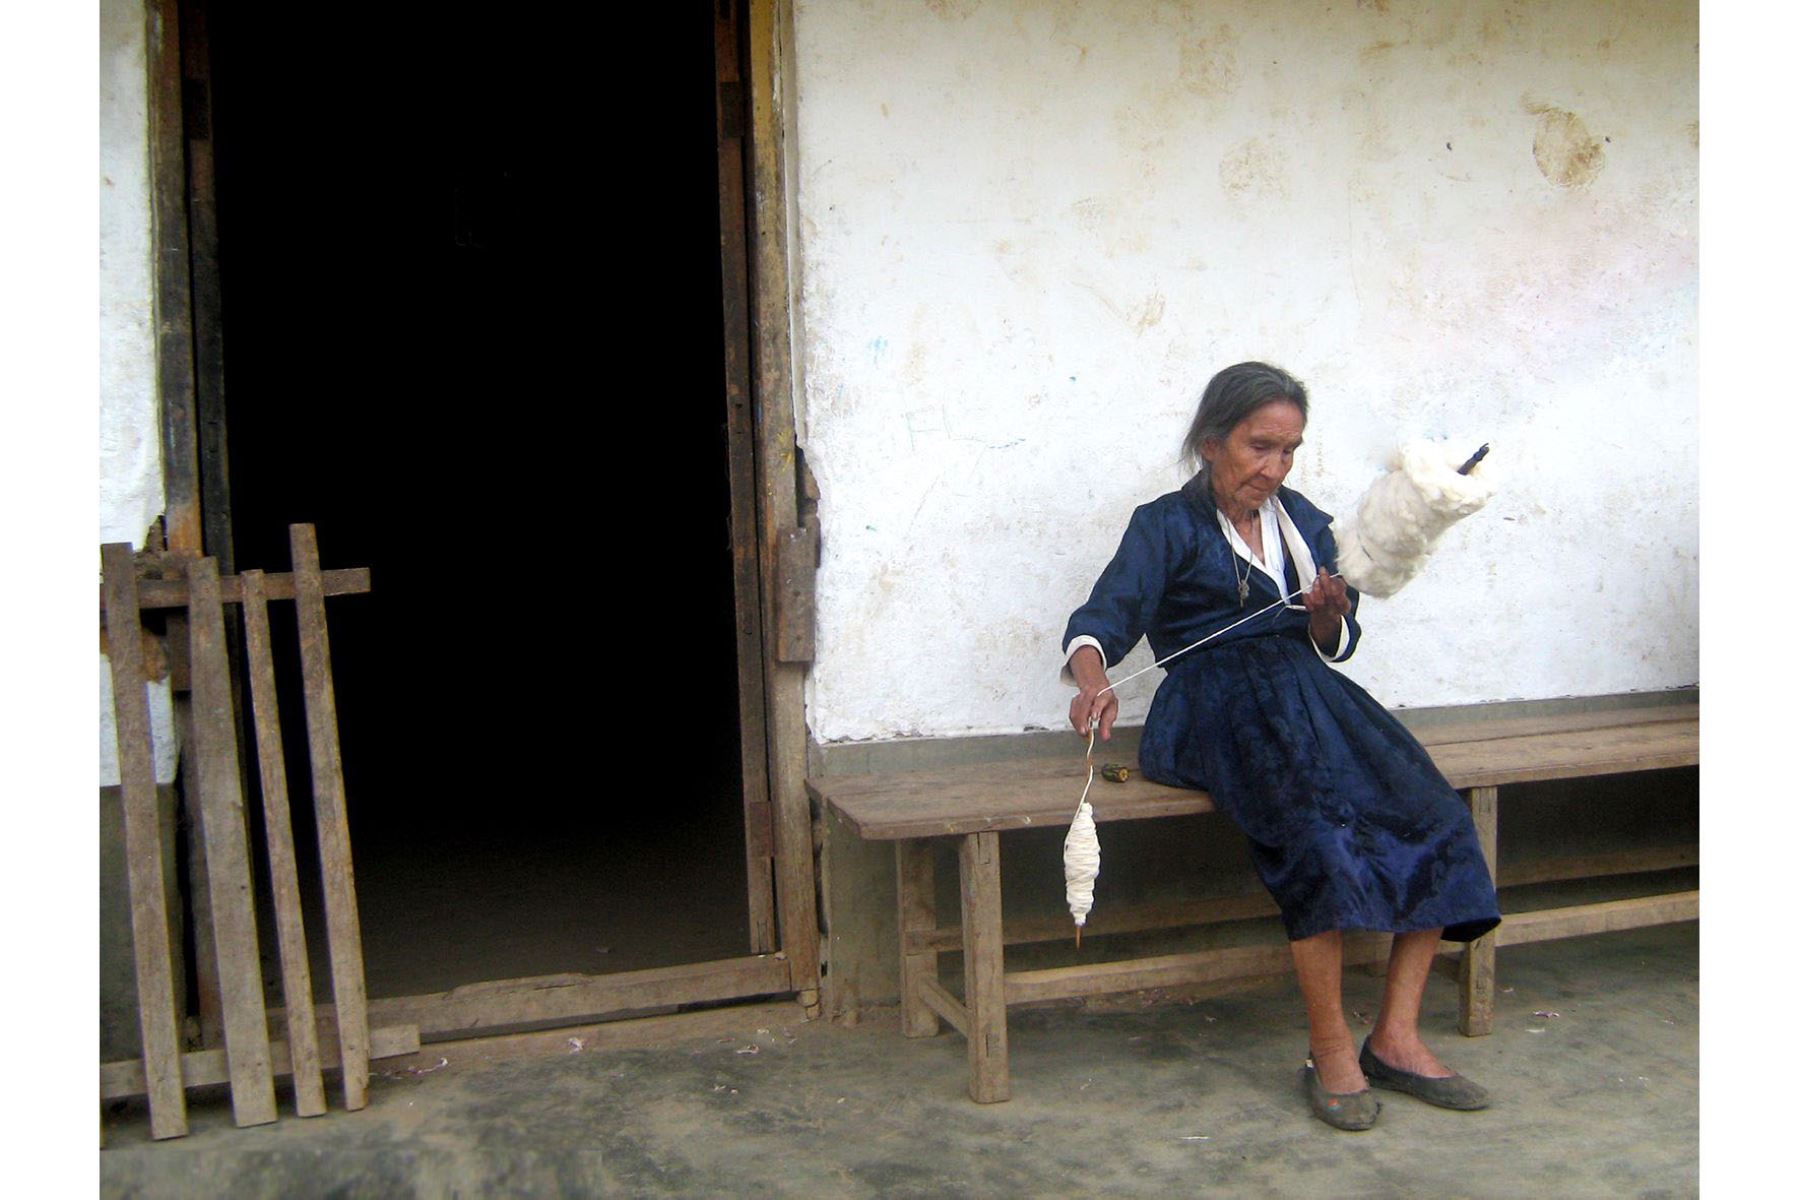 Autor: Rosalina Quiñones. Taller: La fotografía como herramienta de protección y vigilancia ambiental. Panchía, San Ignacio, Cajamarca.